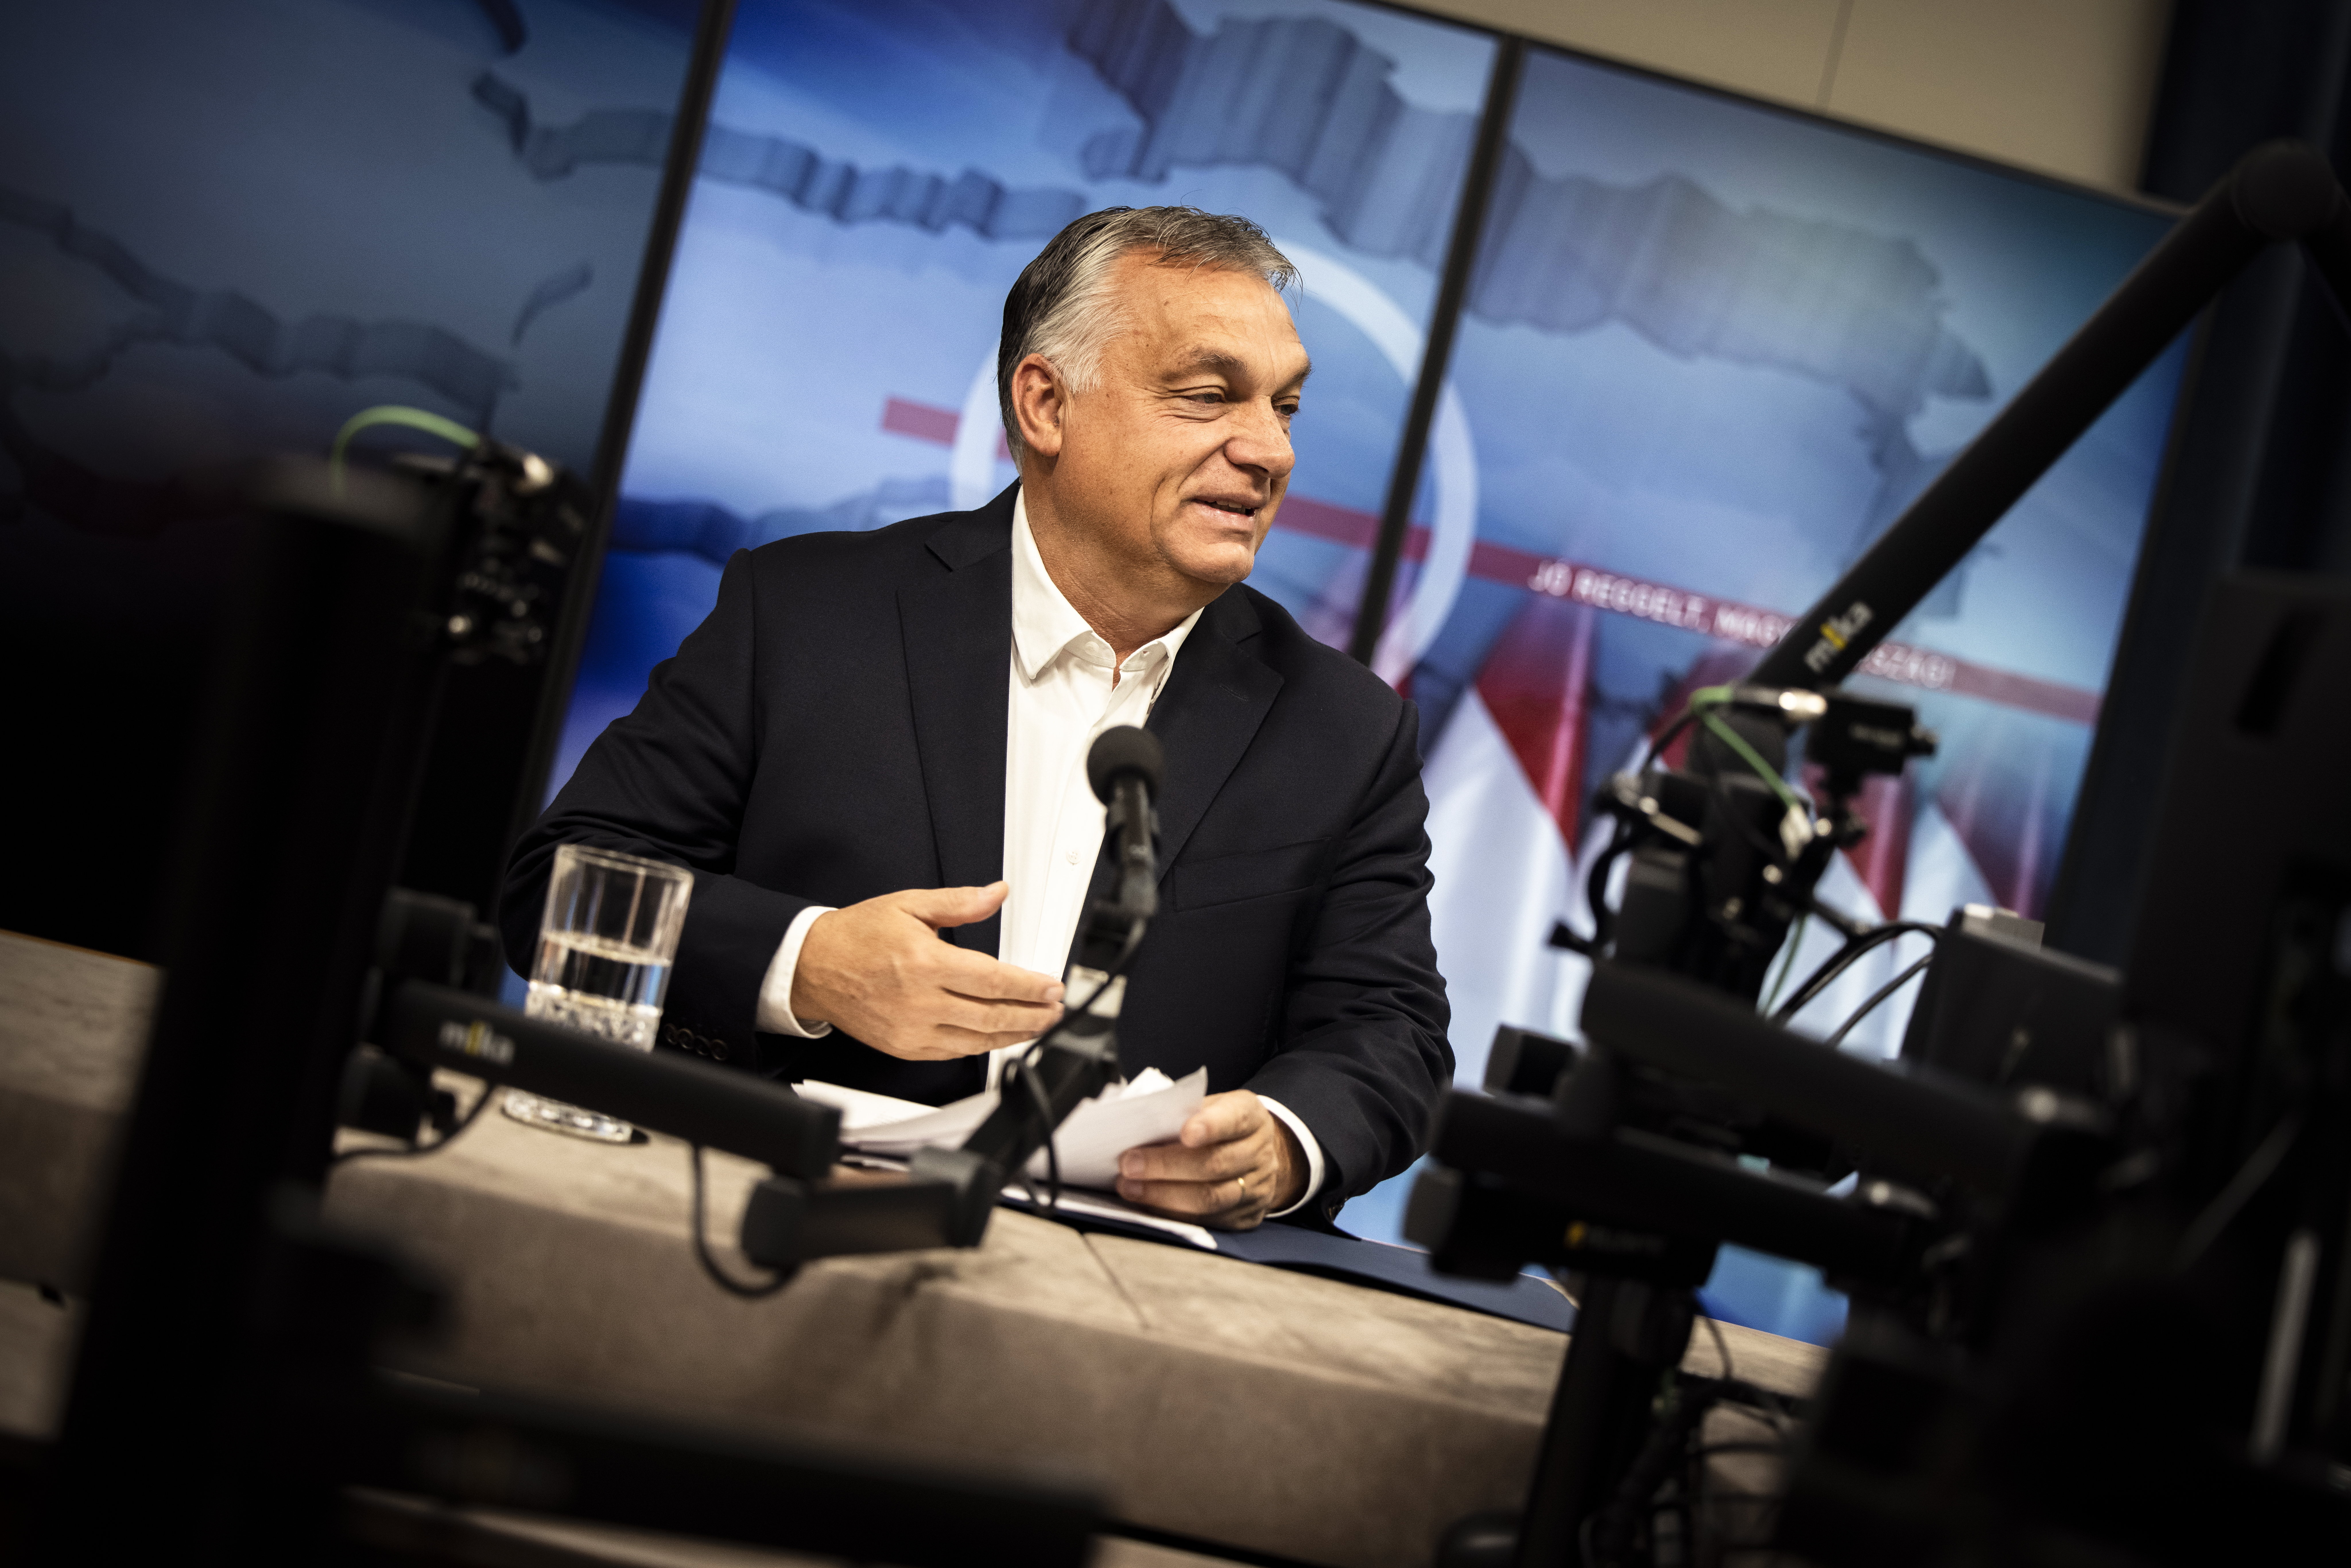 Orbán Viktor elutazott